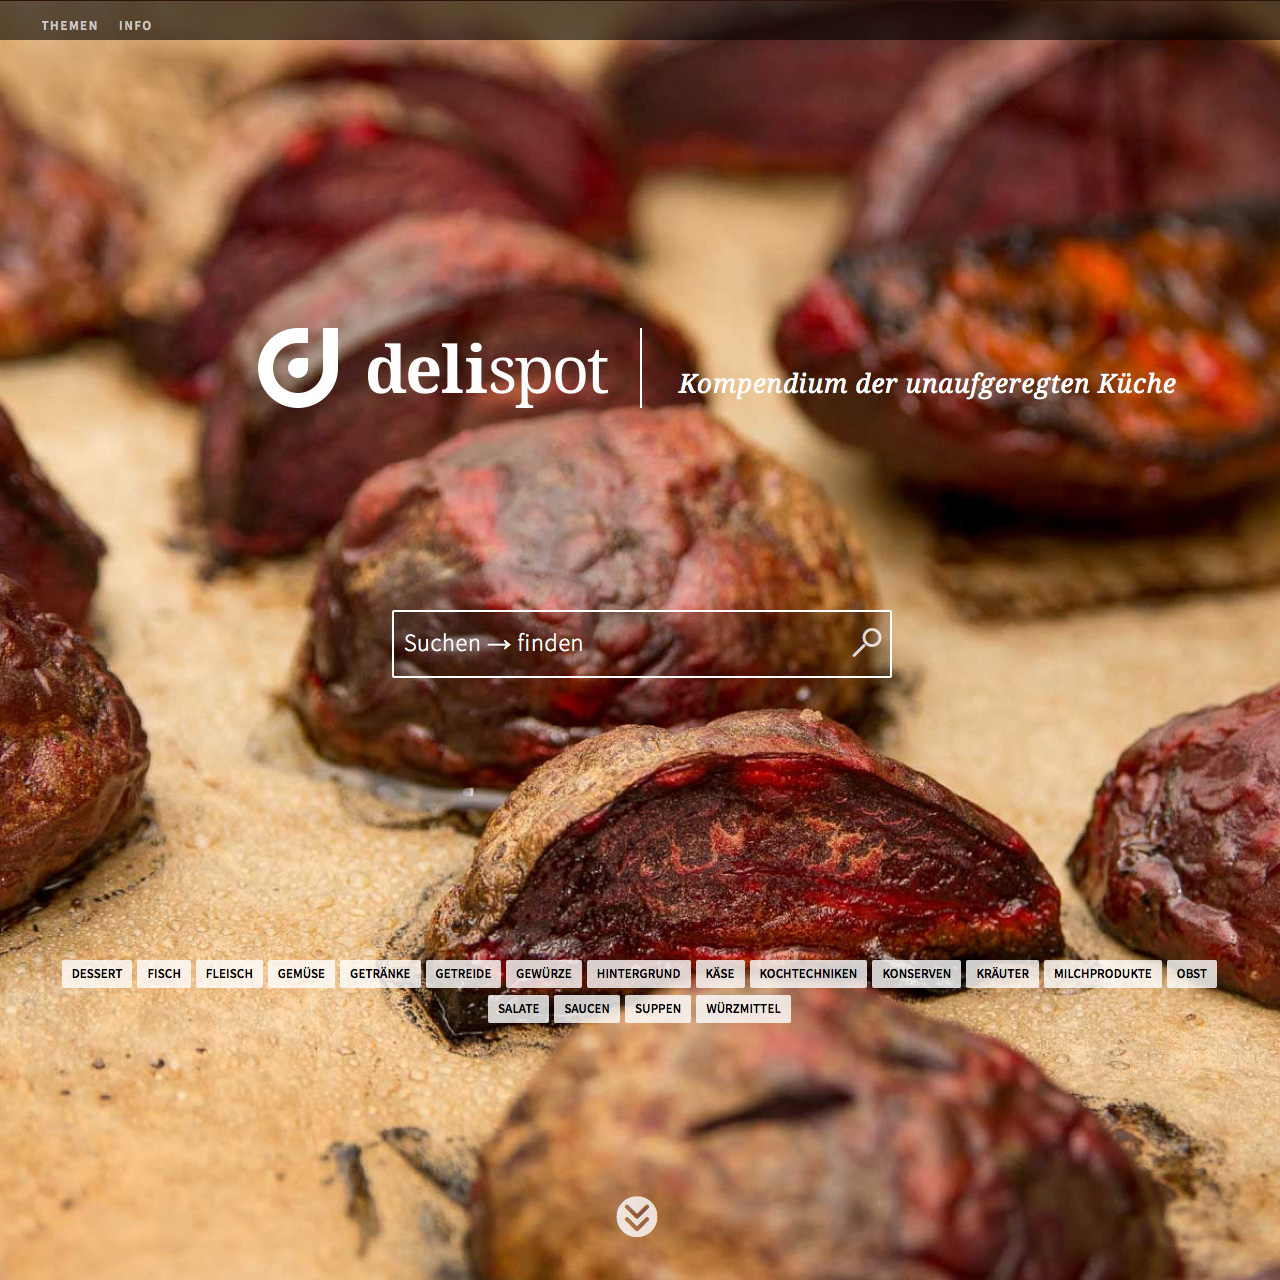 delispot – Kompendium der unaufgeregten Küche